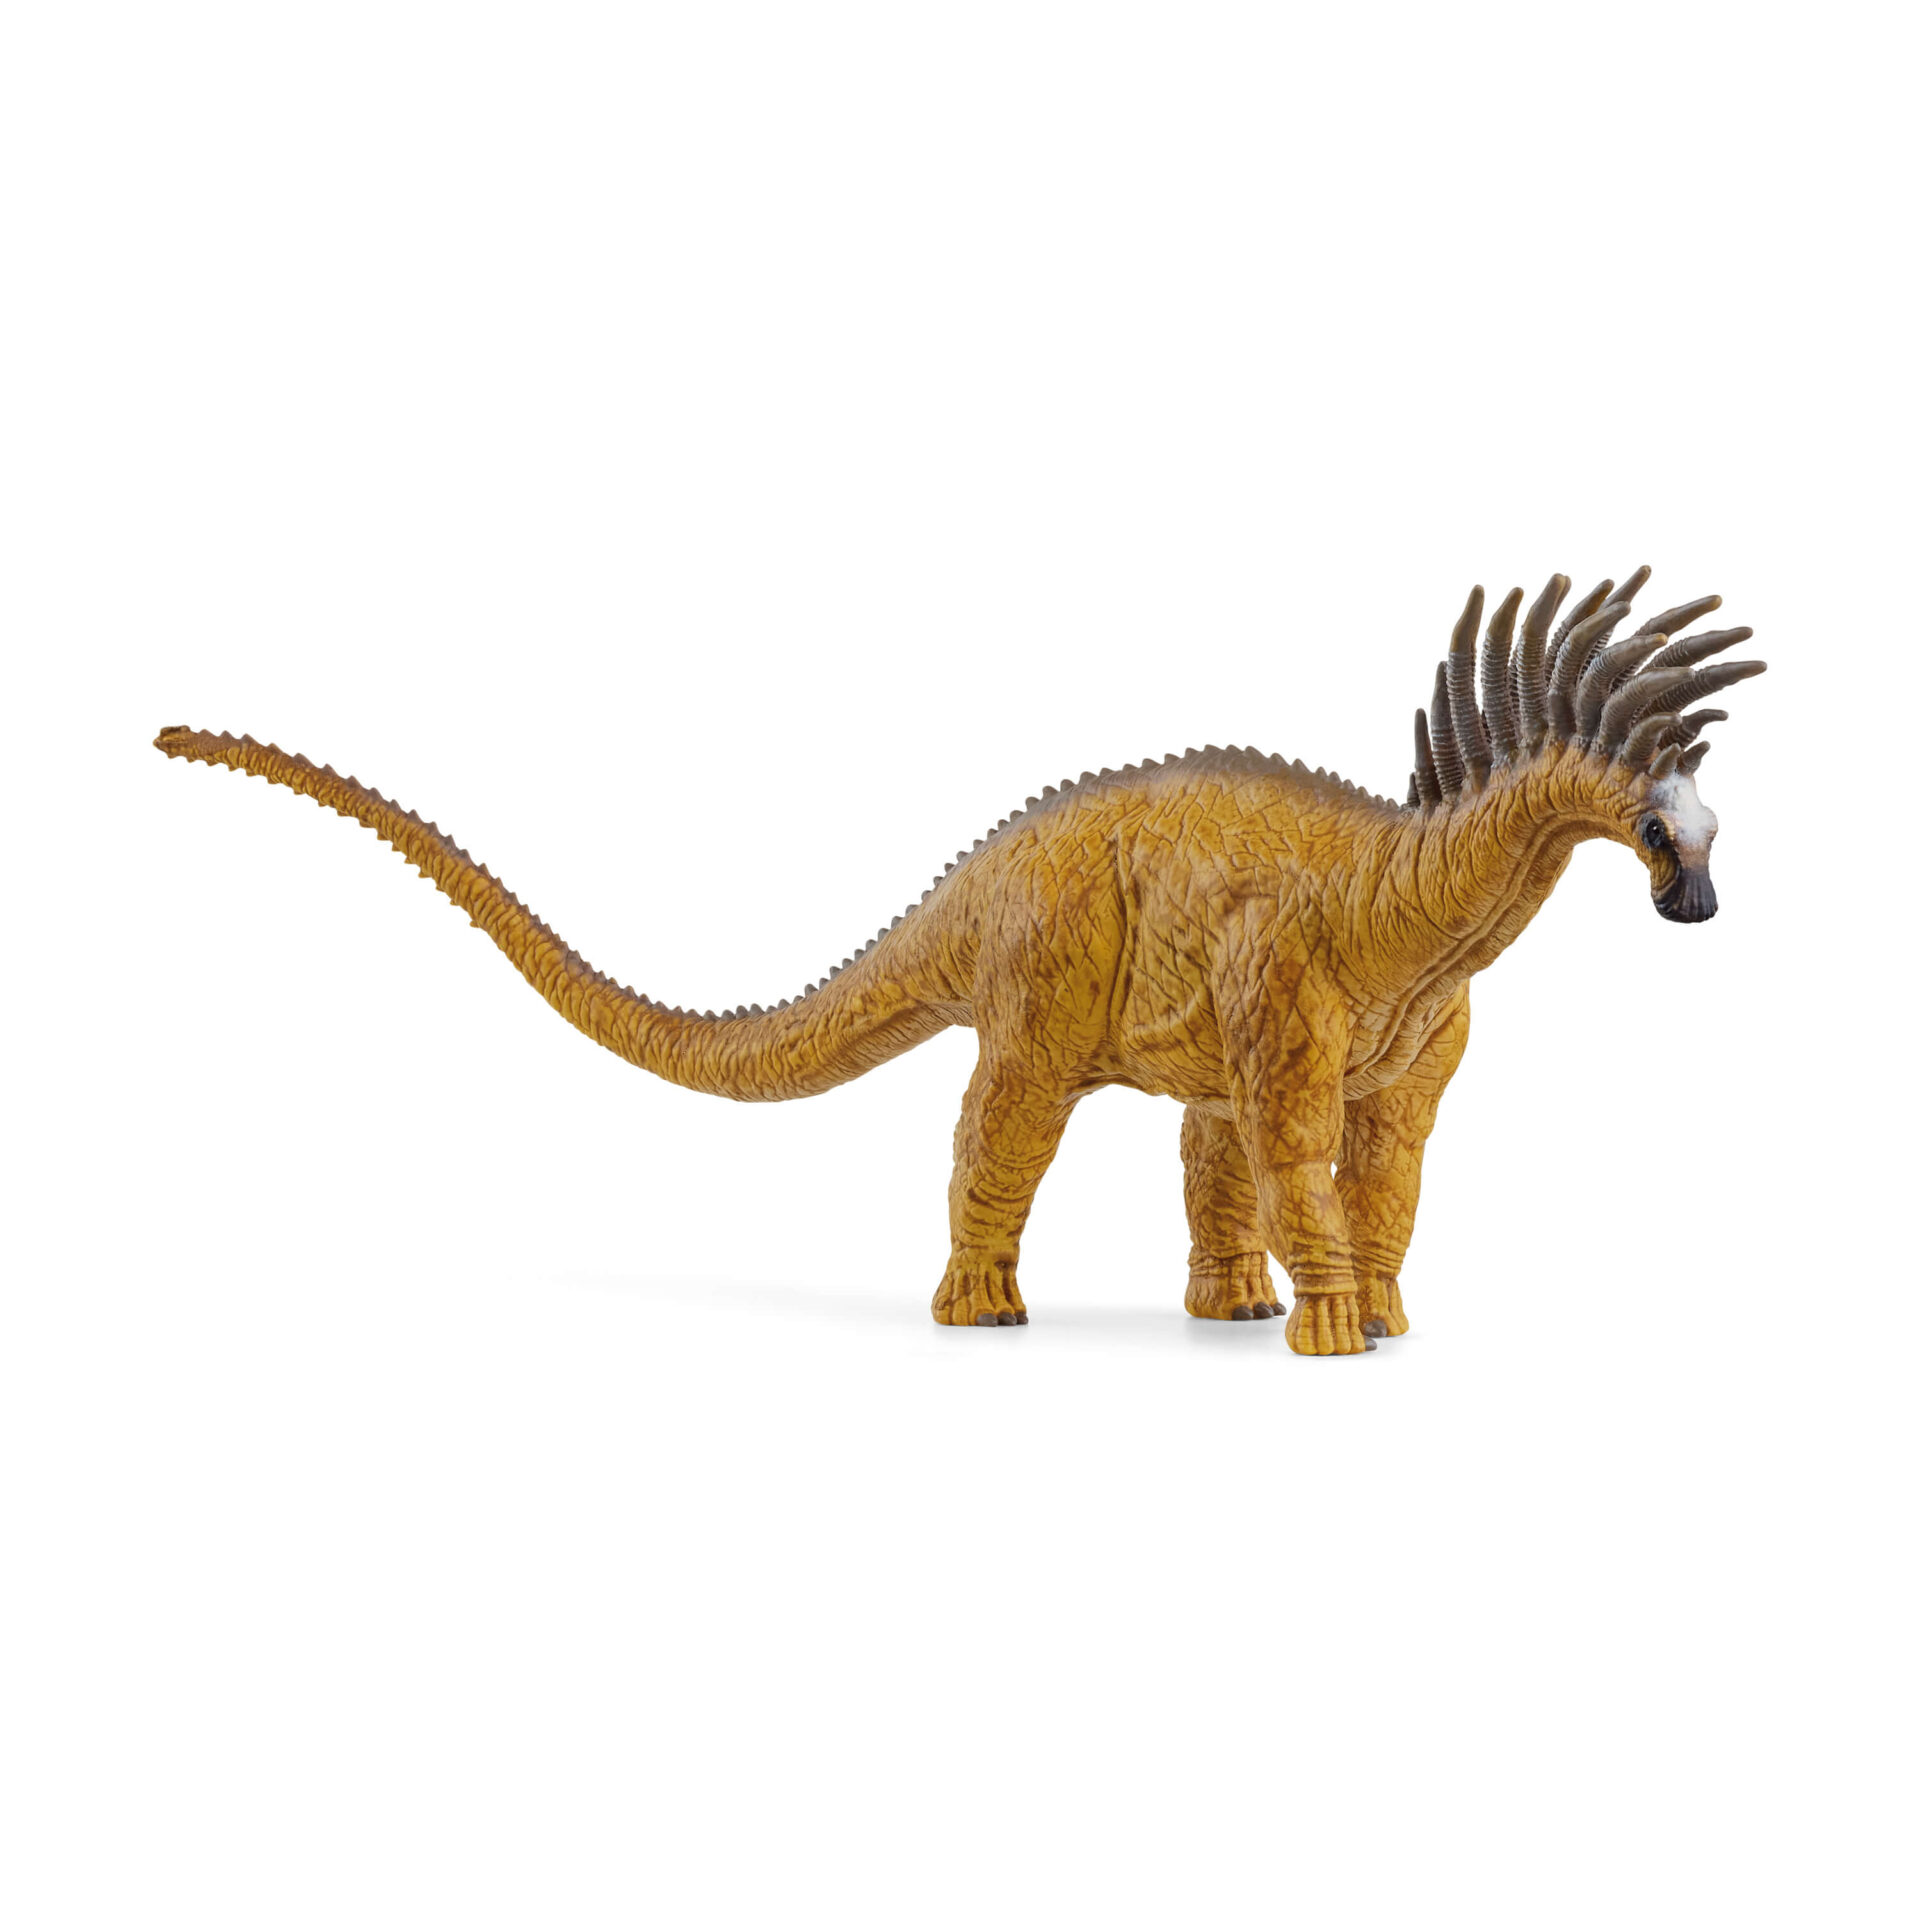 シュライヒ恐竜フィギュア バジャダサウルス